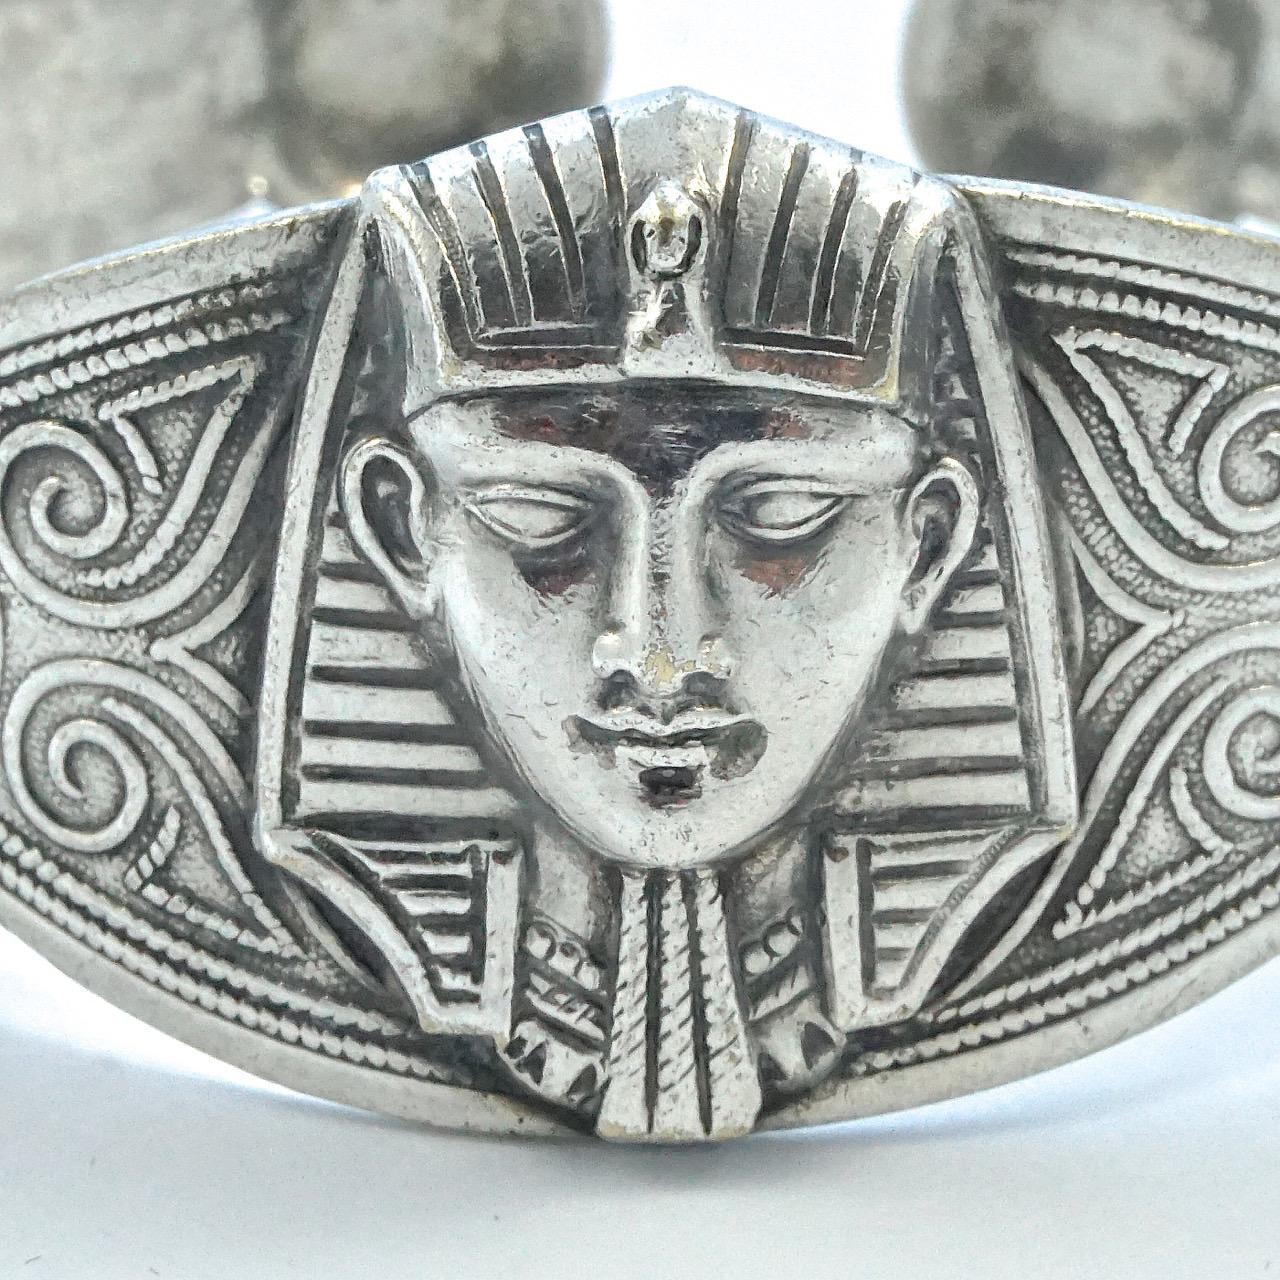 Merveilleux bracelet en argent de style néo-égyptien, représentant au centre un pharaon flanqué de deux éléphants, avec une décoration ornementale sur la bande. Testé pour l'argent. Il est probablement d'origine nord-africaine, car il porte un